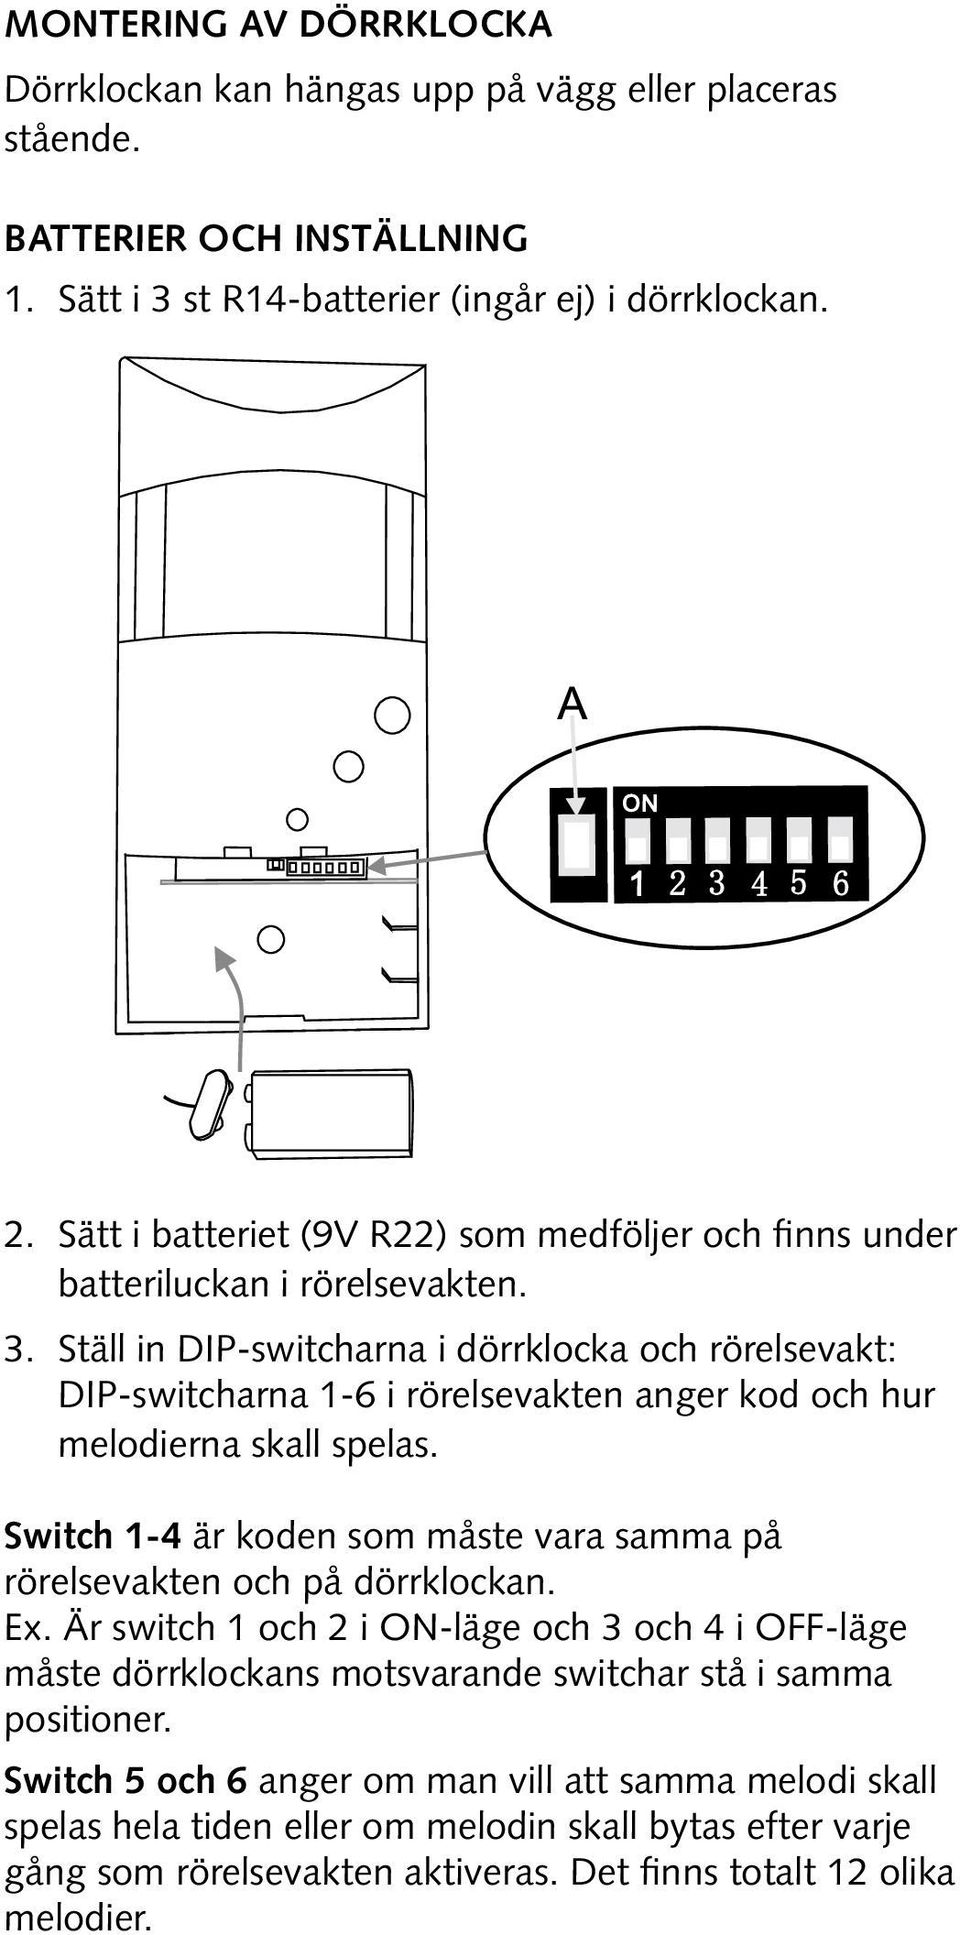 Ställ in DIP-switcharna i dörrklocka och rörelsevakt: DIP-switcharna 1-6 i rörelsevakten anger kod och hur melodierna skall spelas.